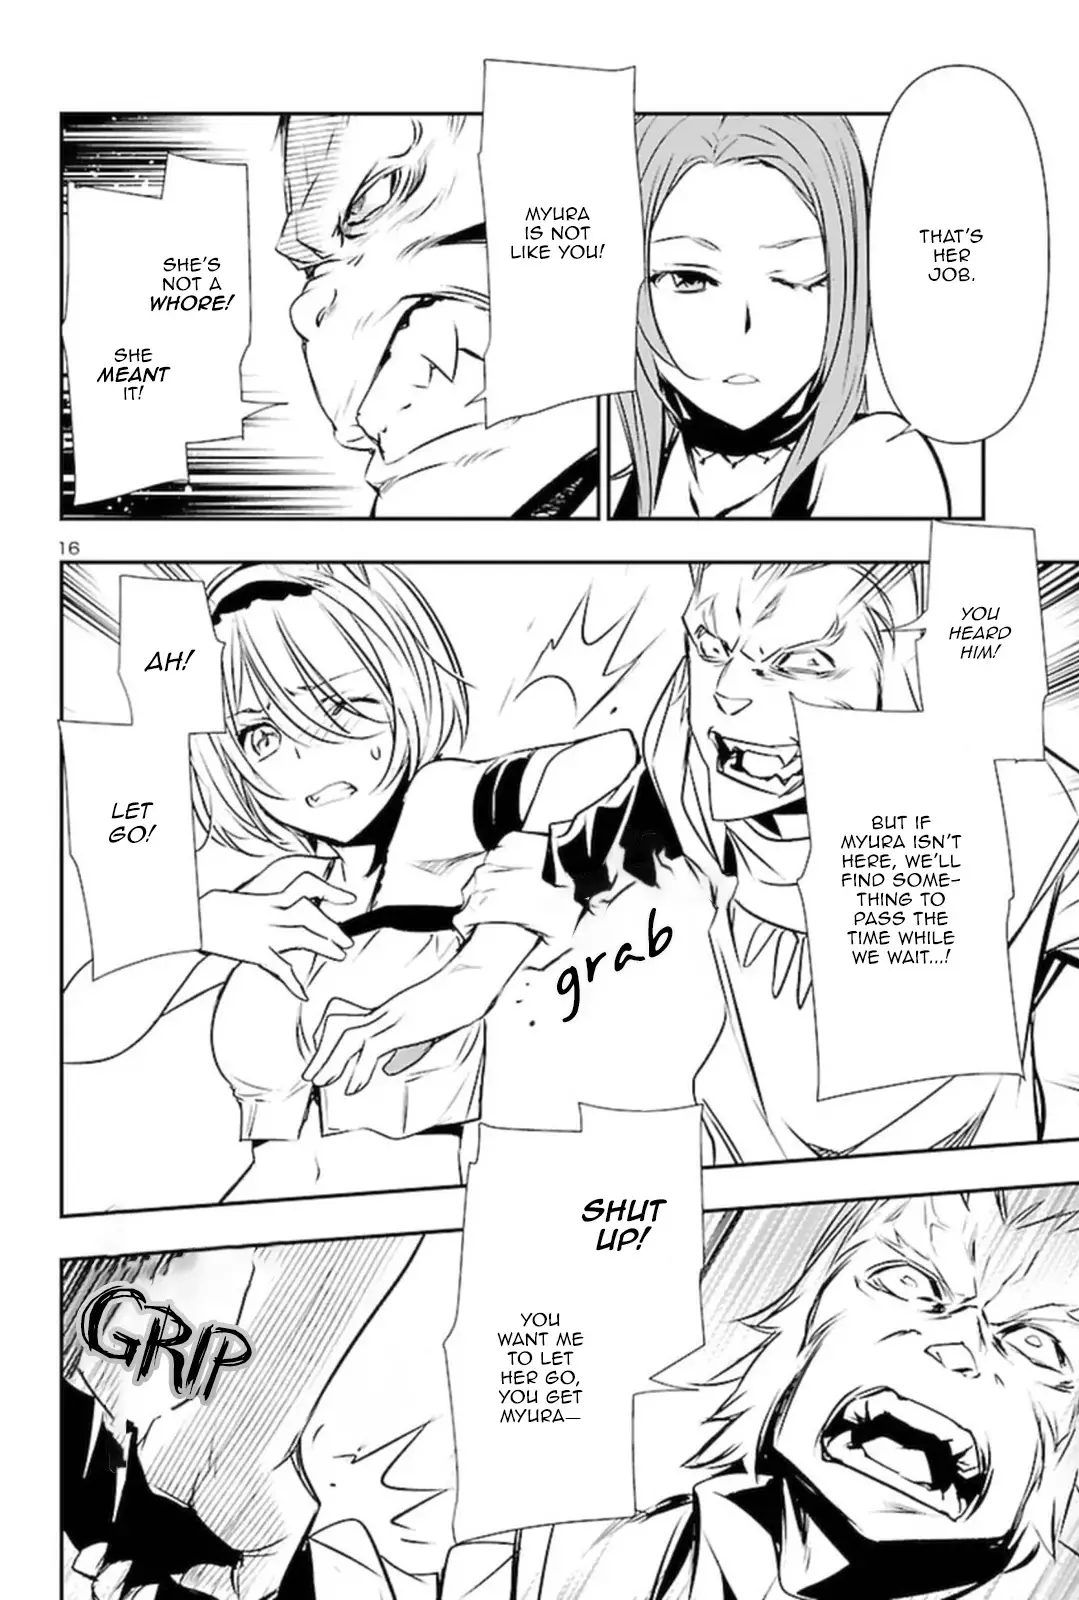 Shinju no Nectar - 56 page 15